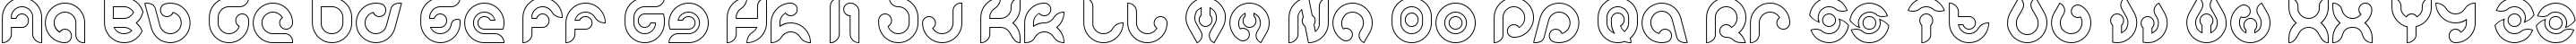 Пример написания английского алфавита шрифтом KIOSHIMA-Outlined